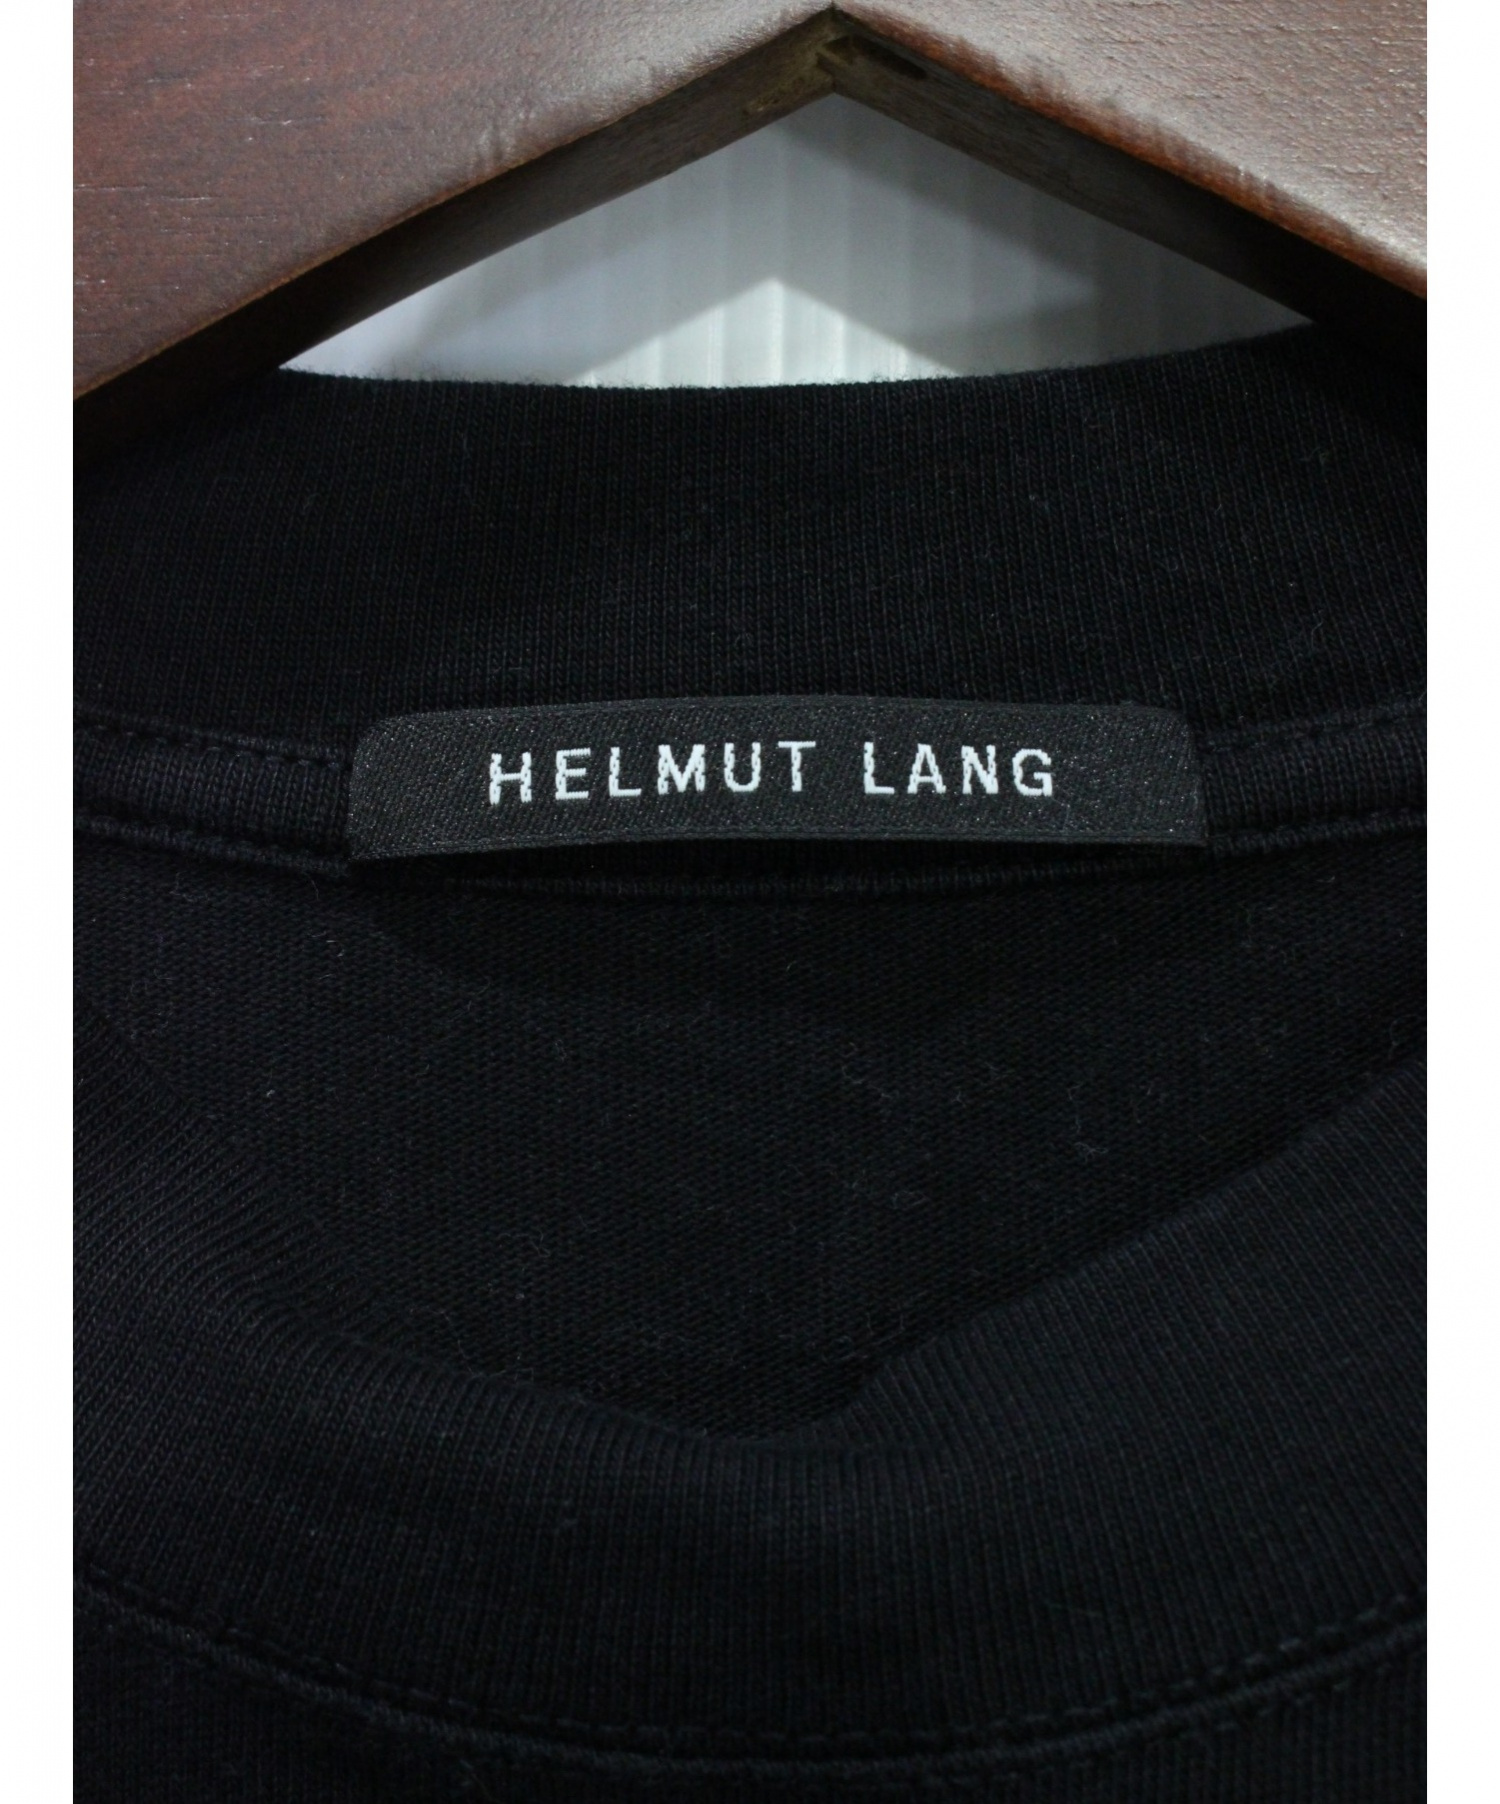 HELMUT LANG (ヘルムートラング) Austria Tシャツ ブラック サイズ:S 